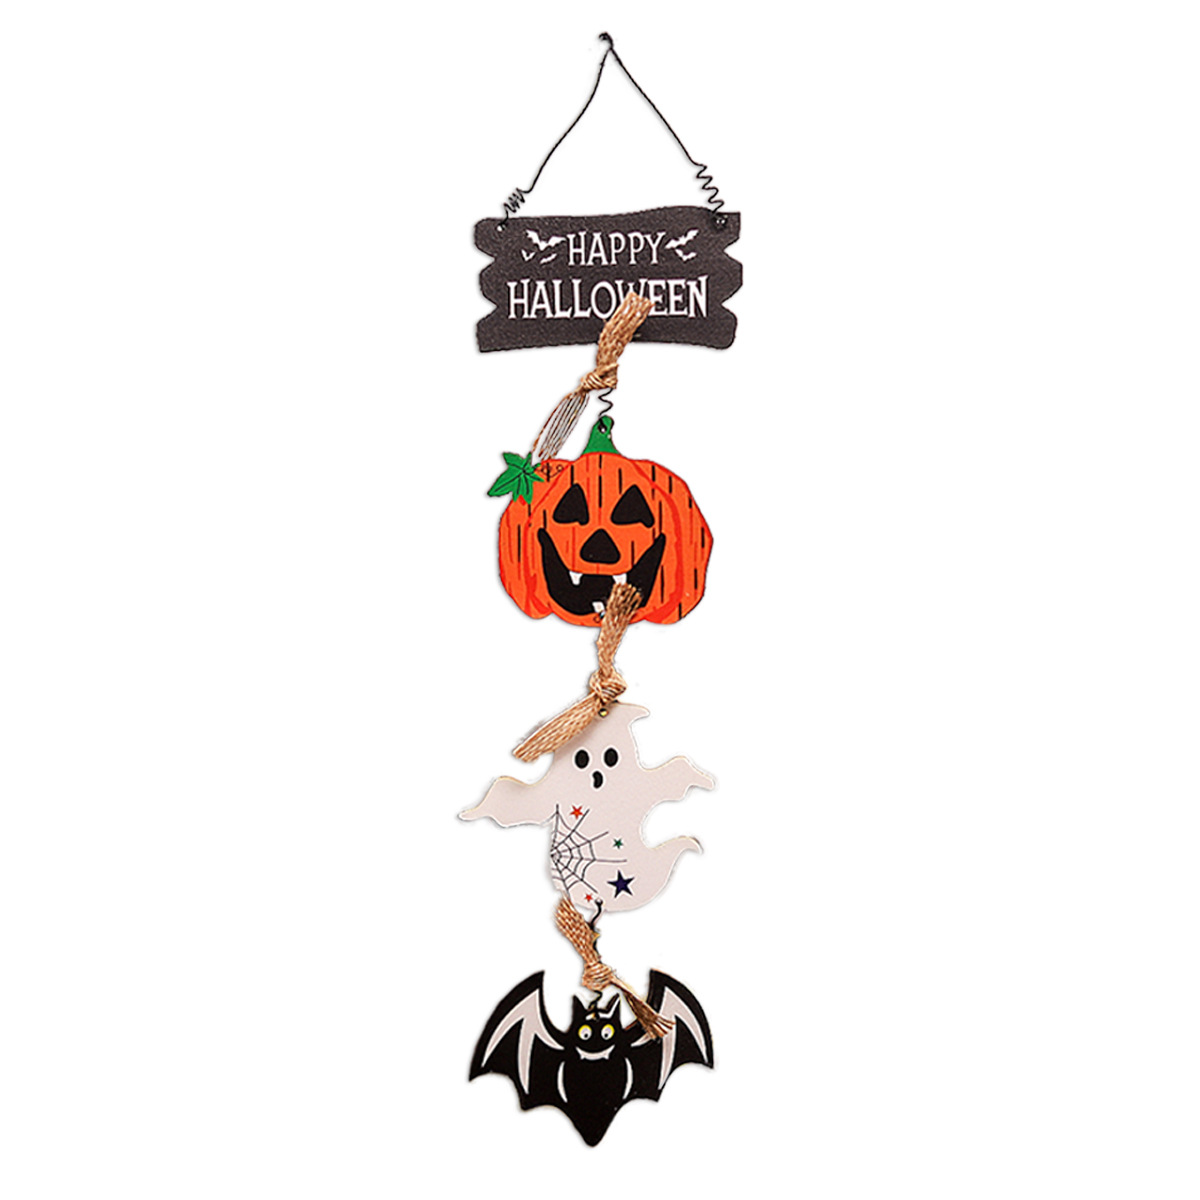 Halloween Decorations New Wooden Door Hanging Pumpkin Ghost Ornament Creative Ornament Cross-border Wholesale